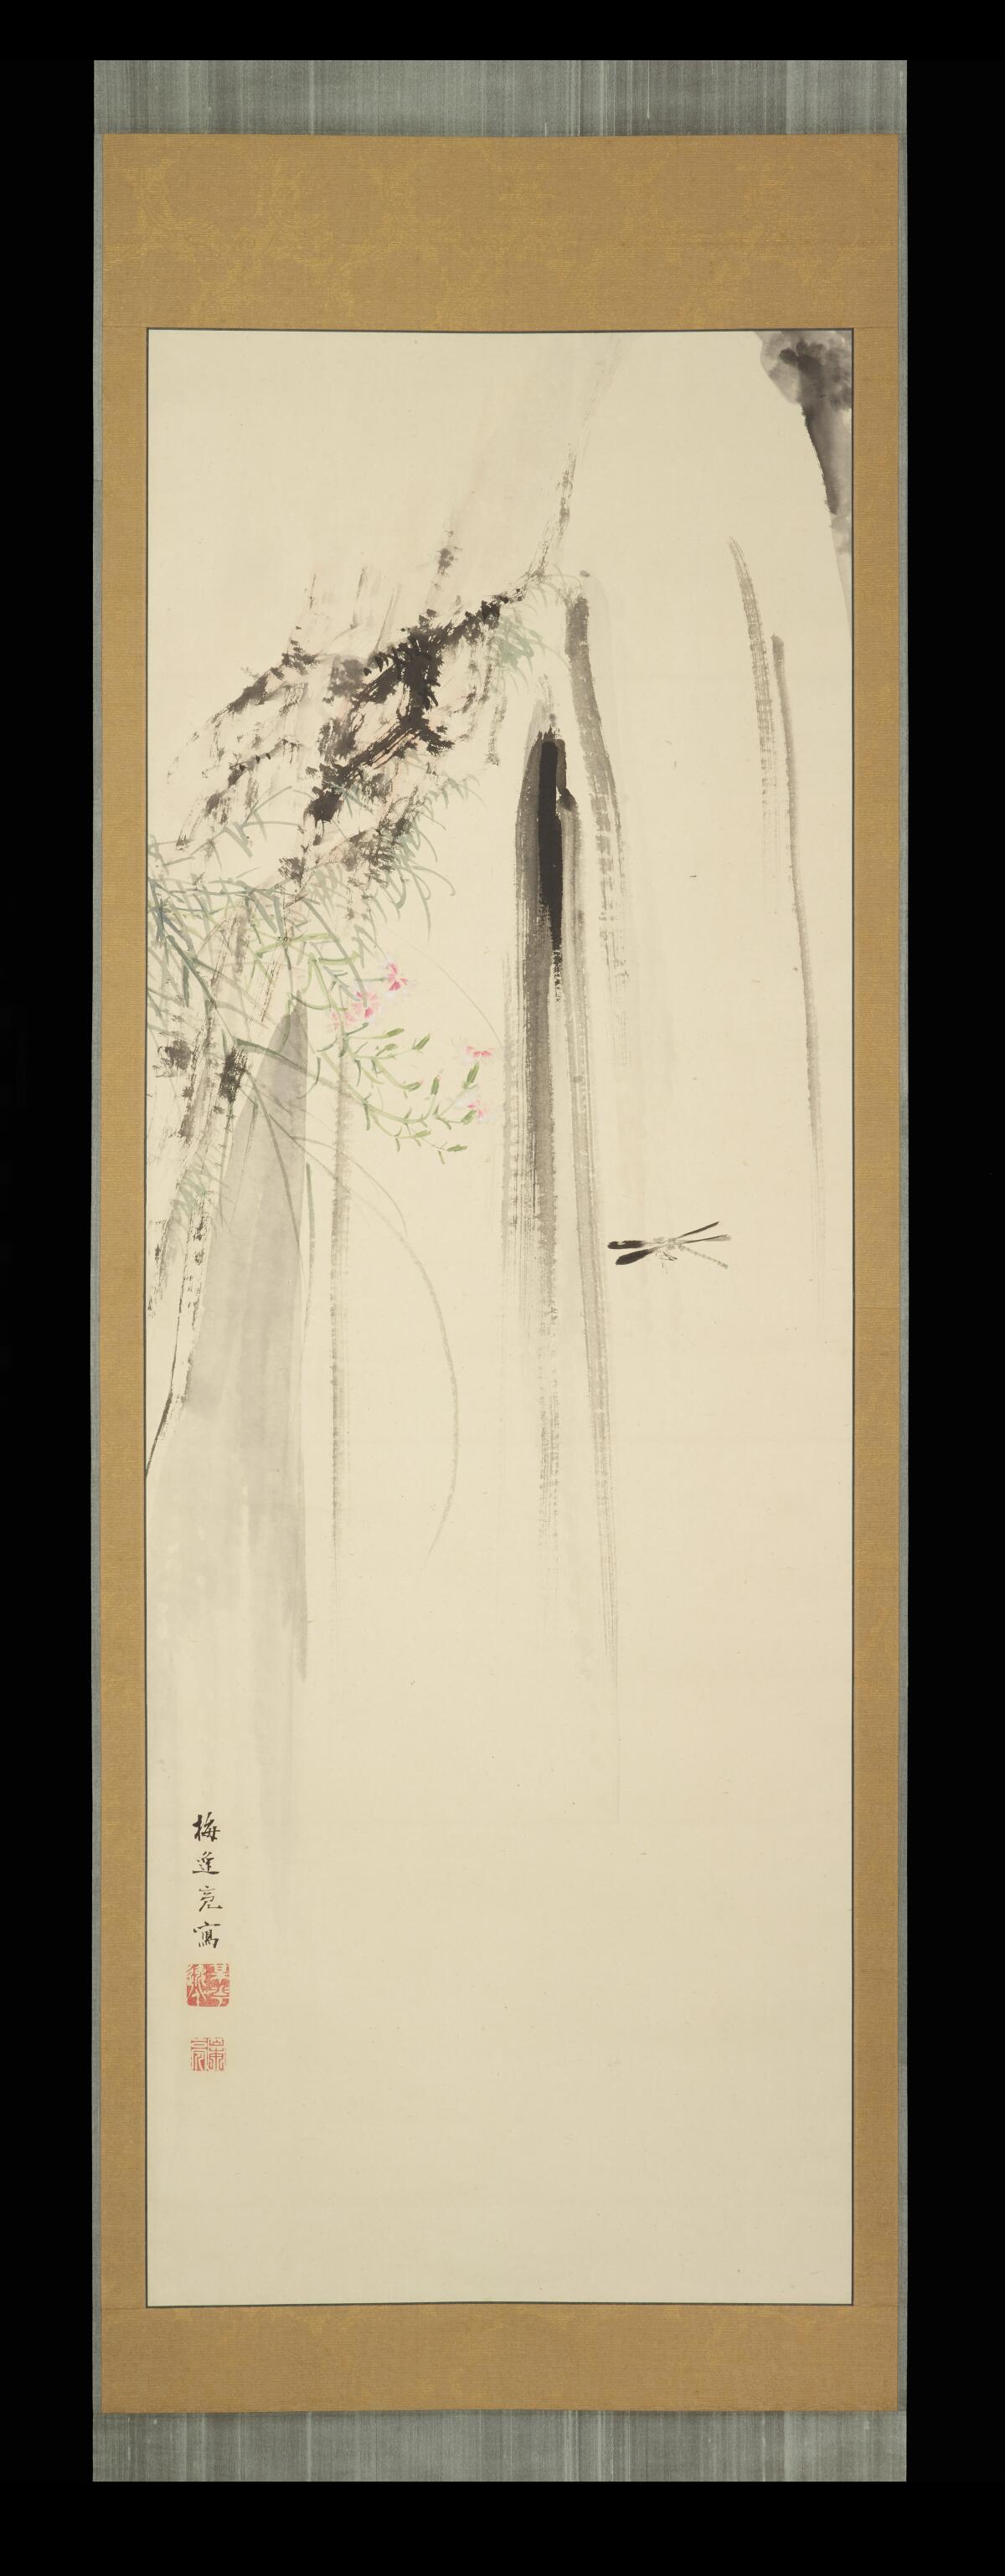 A hanging scroll by Yamamoto Baiitsu